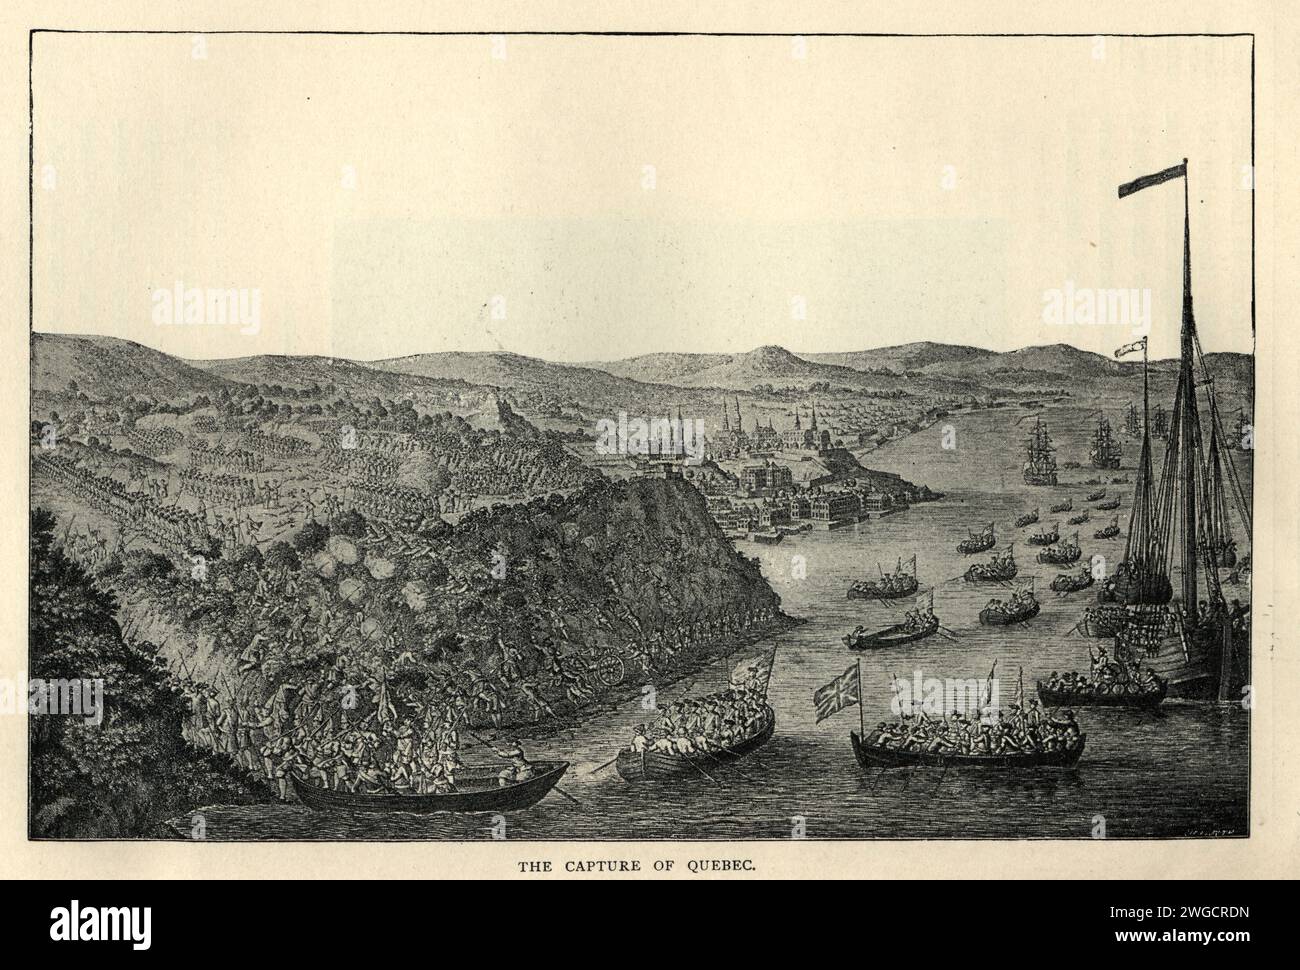 Schlacht von Abraham, Schlacht von Quebec, Siebenjähriger Krieg, Militärgeschichte des 18. Jahrhunderts Stockfoto